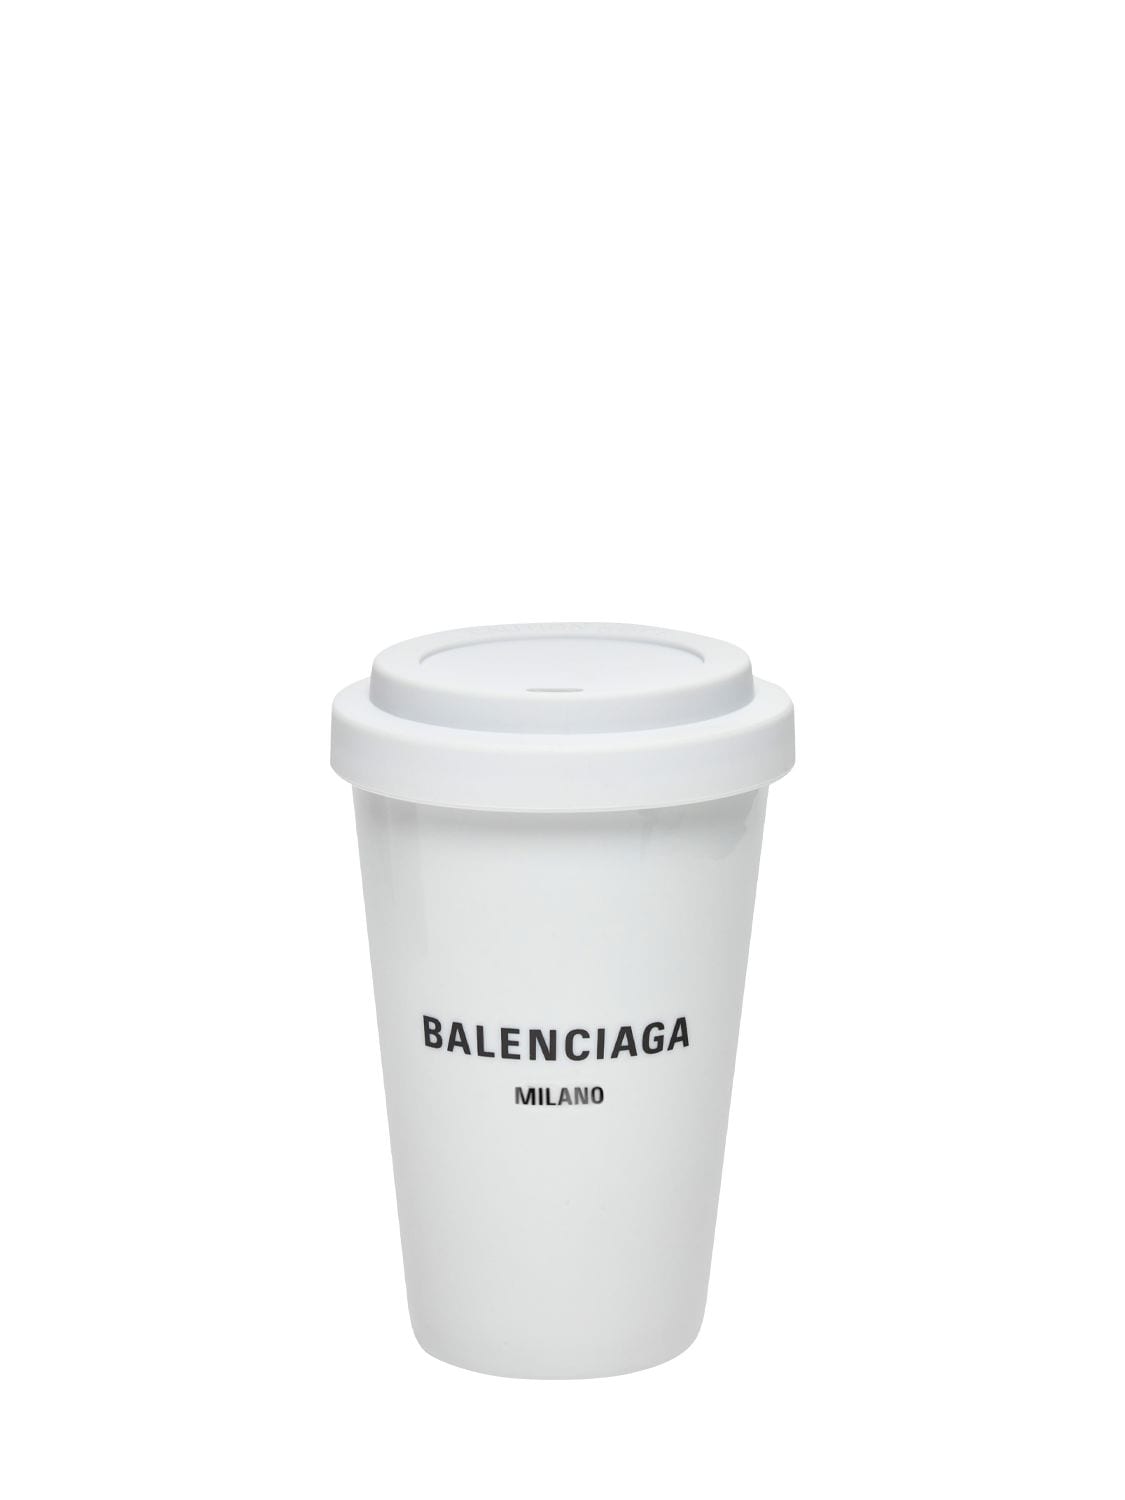 Balenciaga Milan Porcelain Coffee Cup In White